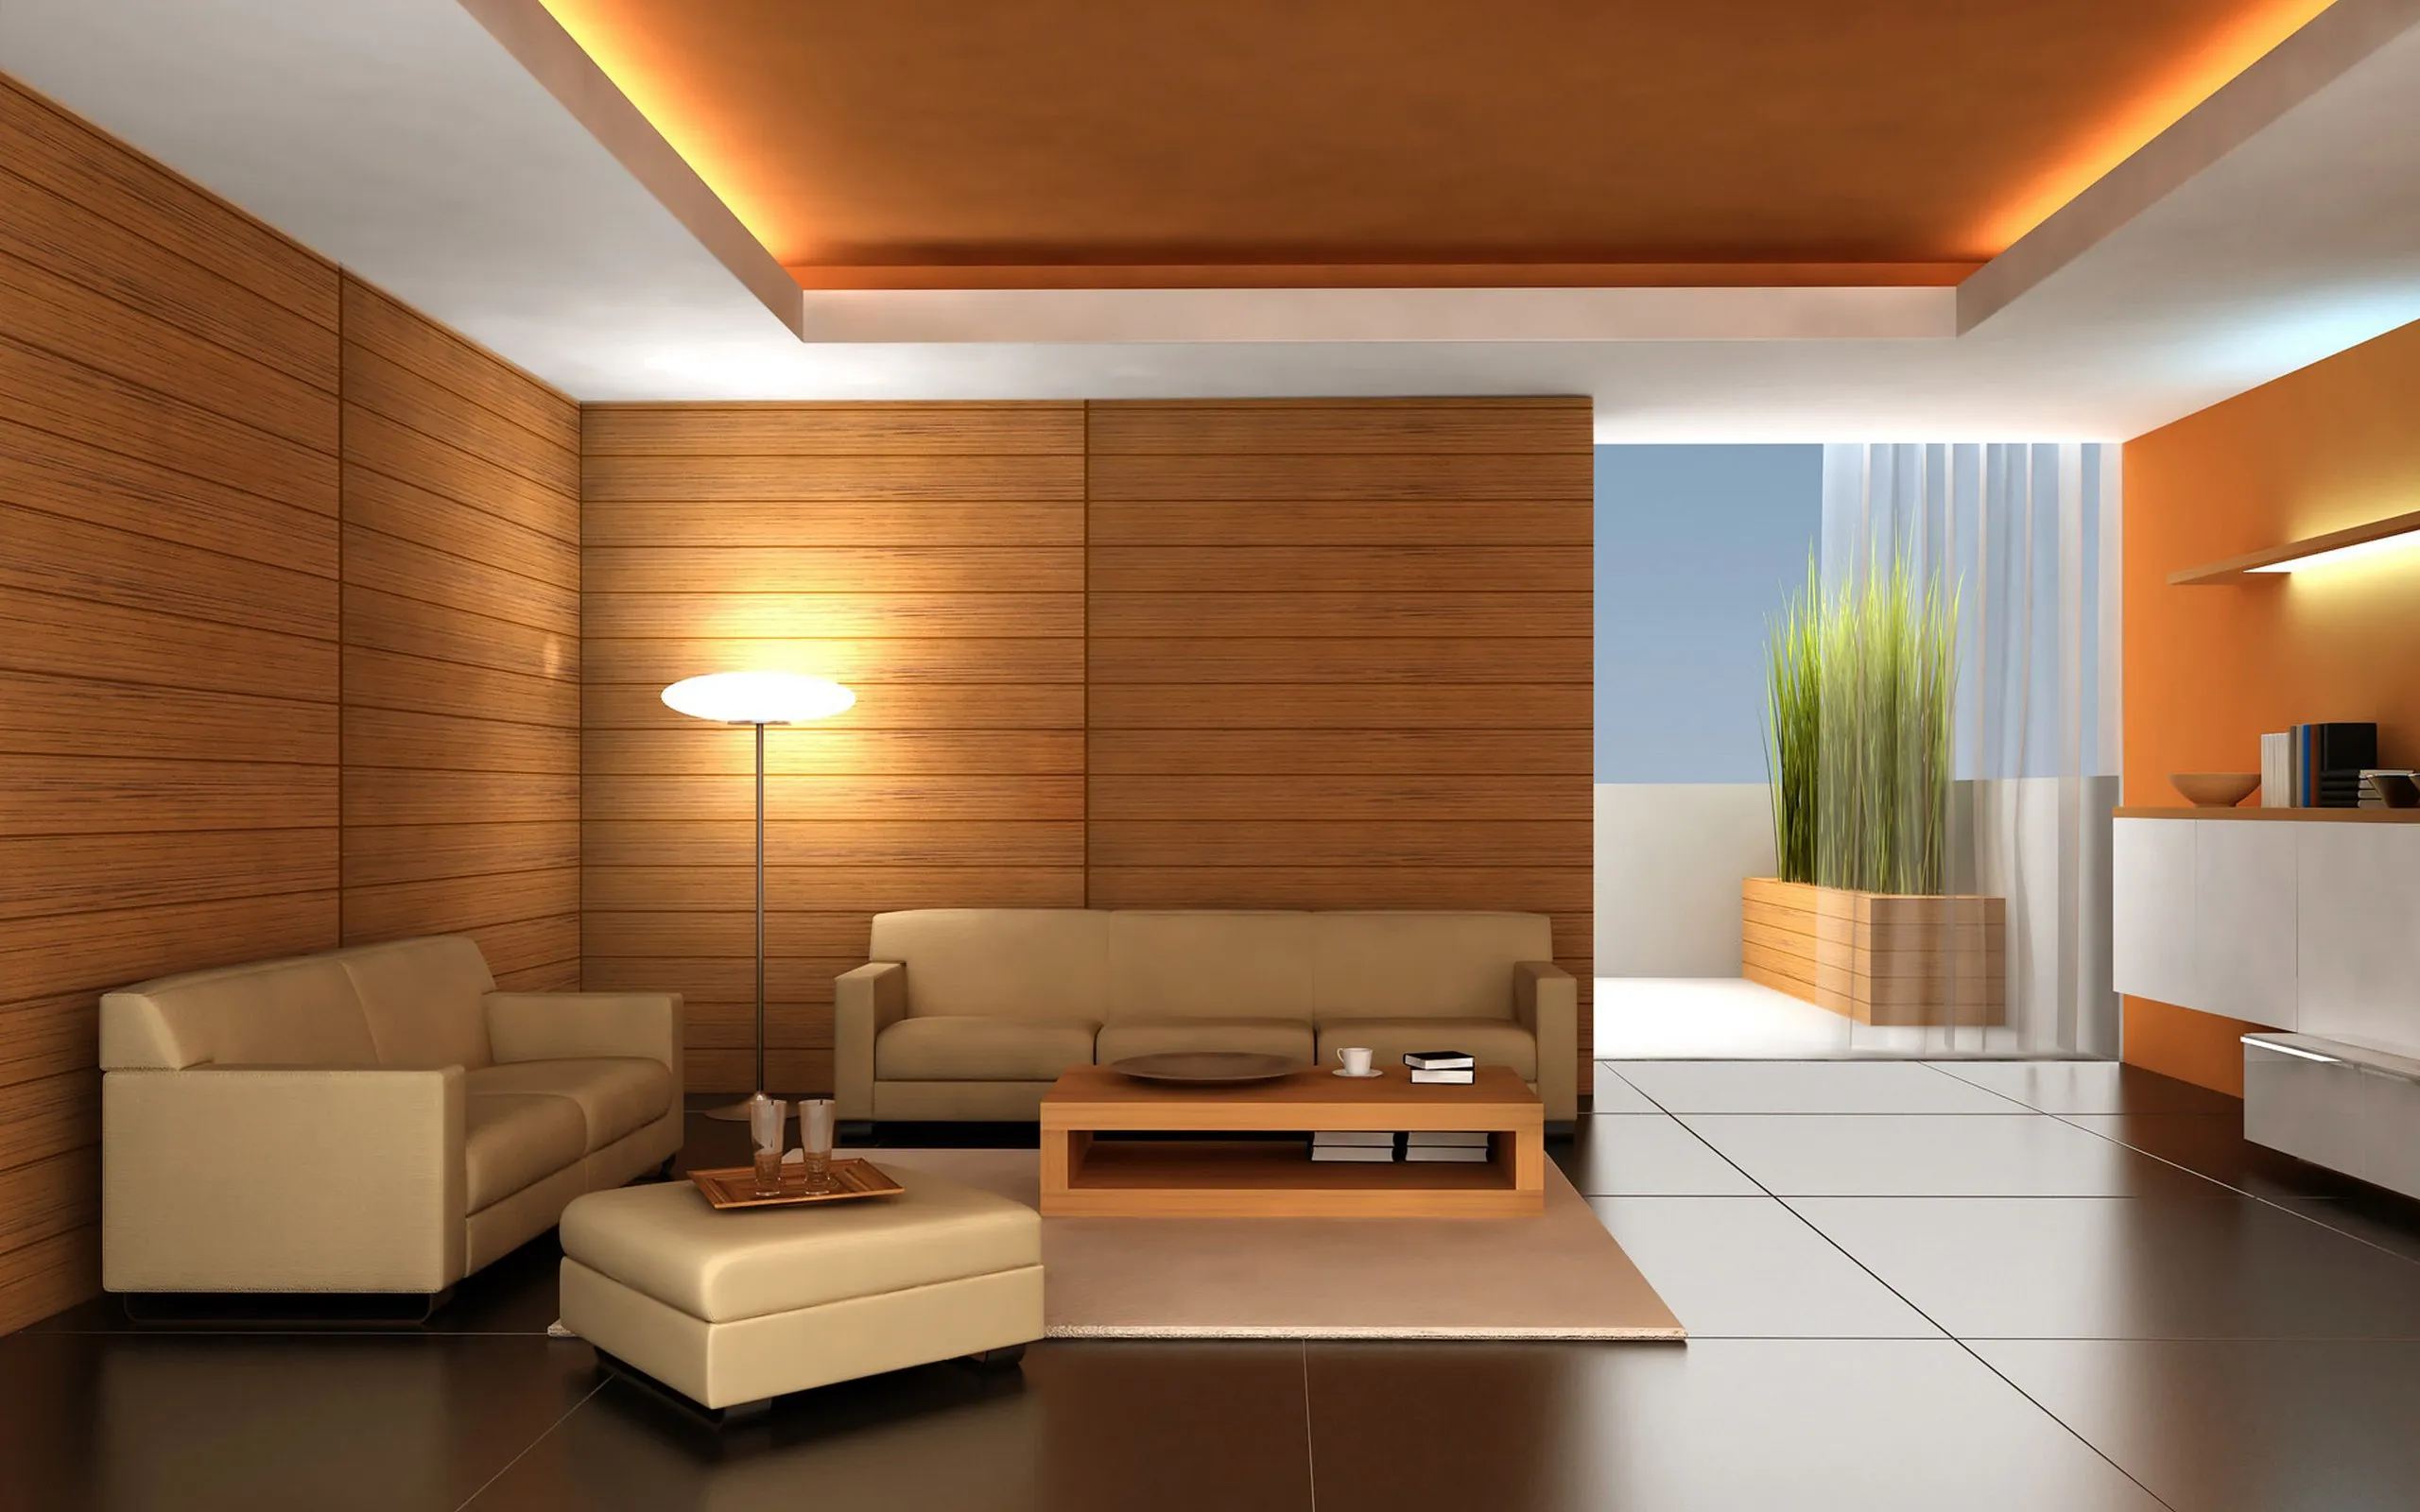 Trang trí phòng khách bằng gỗ tự nhiên nâng tầm không gian sống